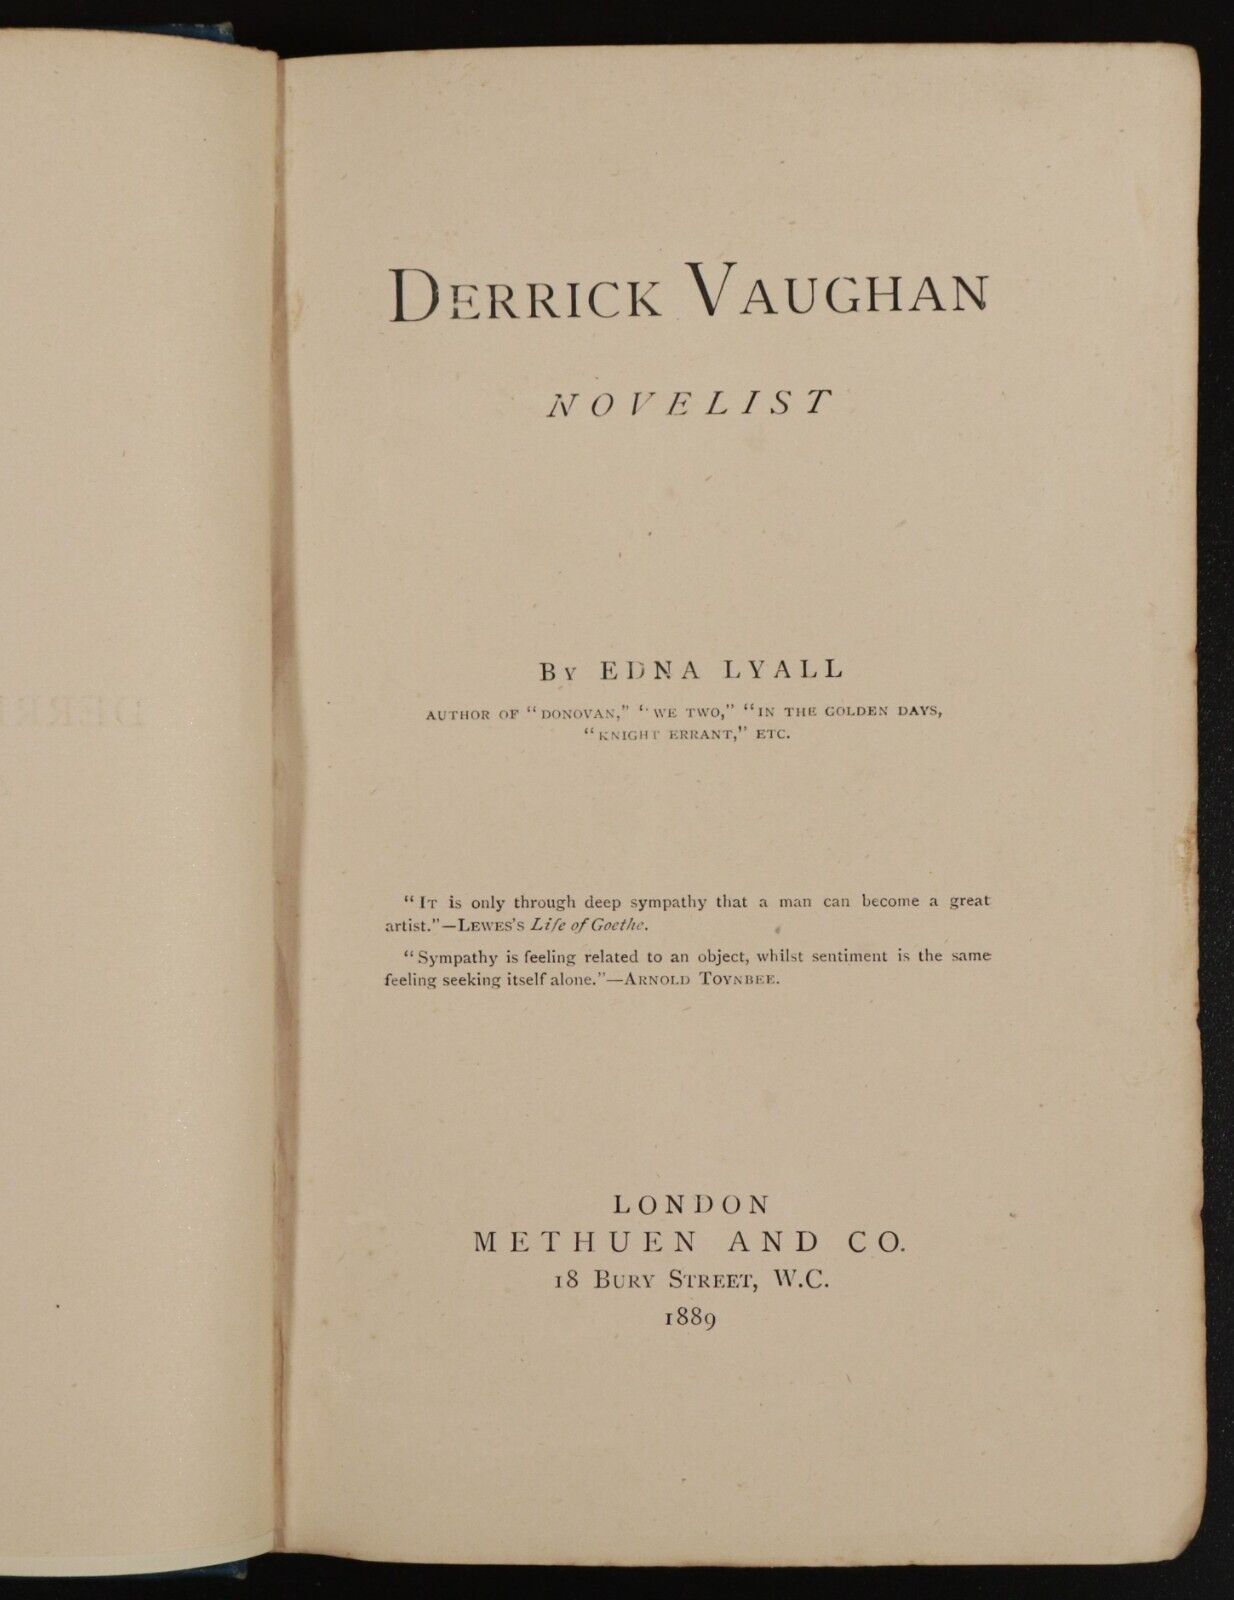 1889 Derrick Vaughan Novelist by Edna Lyall Antiquarian British Fiction Book - 0